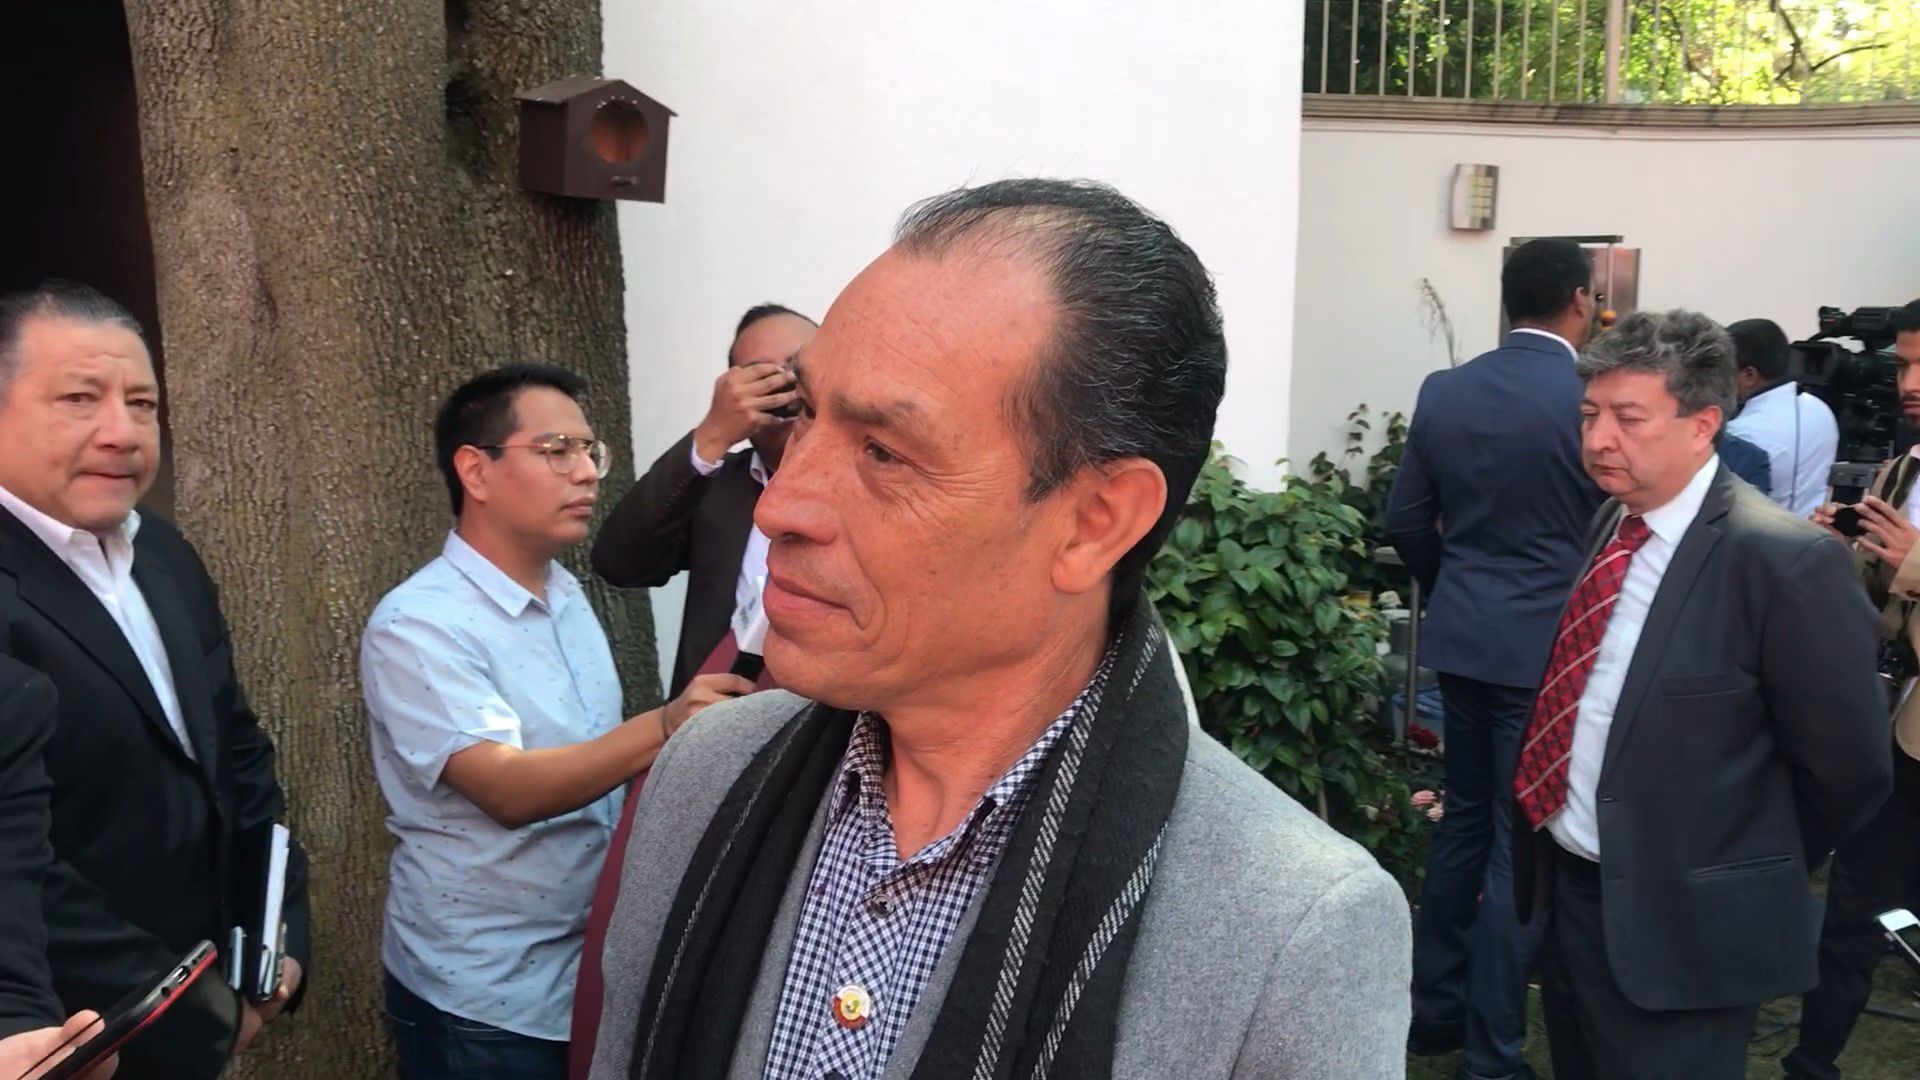 El papá de Chucky Lozano habló sobre su relación con Ancelotti y con Gattuso (Foto: Eduardo Alvarez/Infobae México)